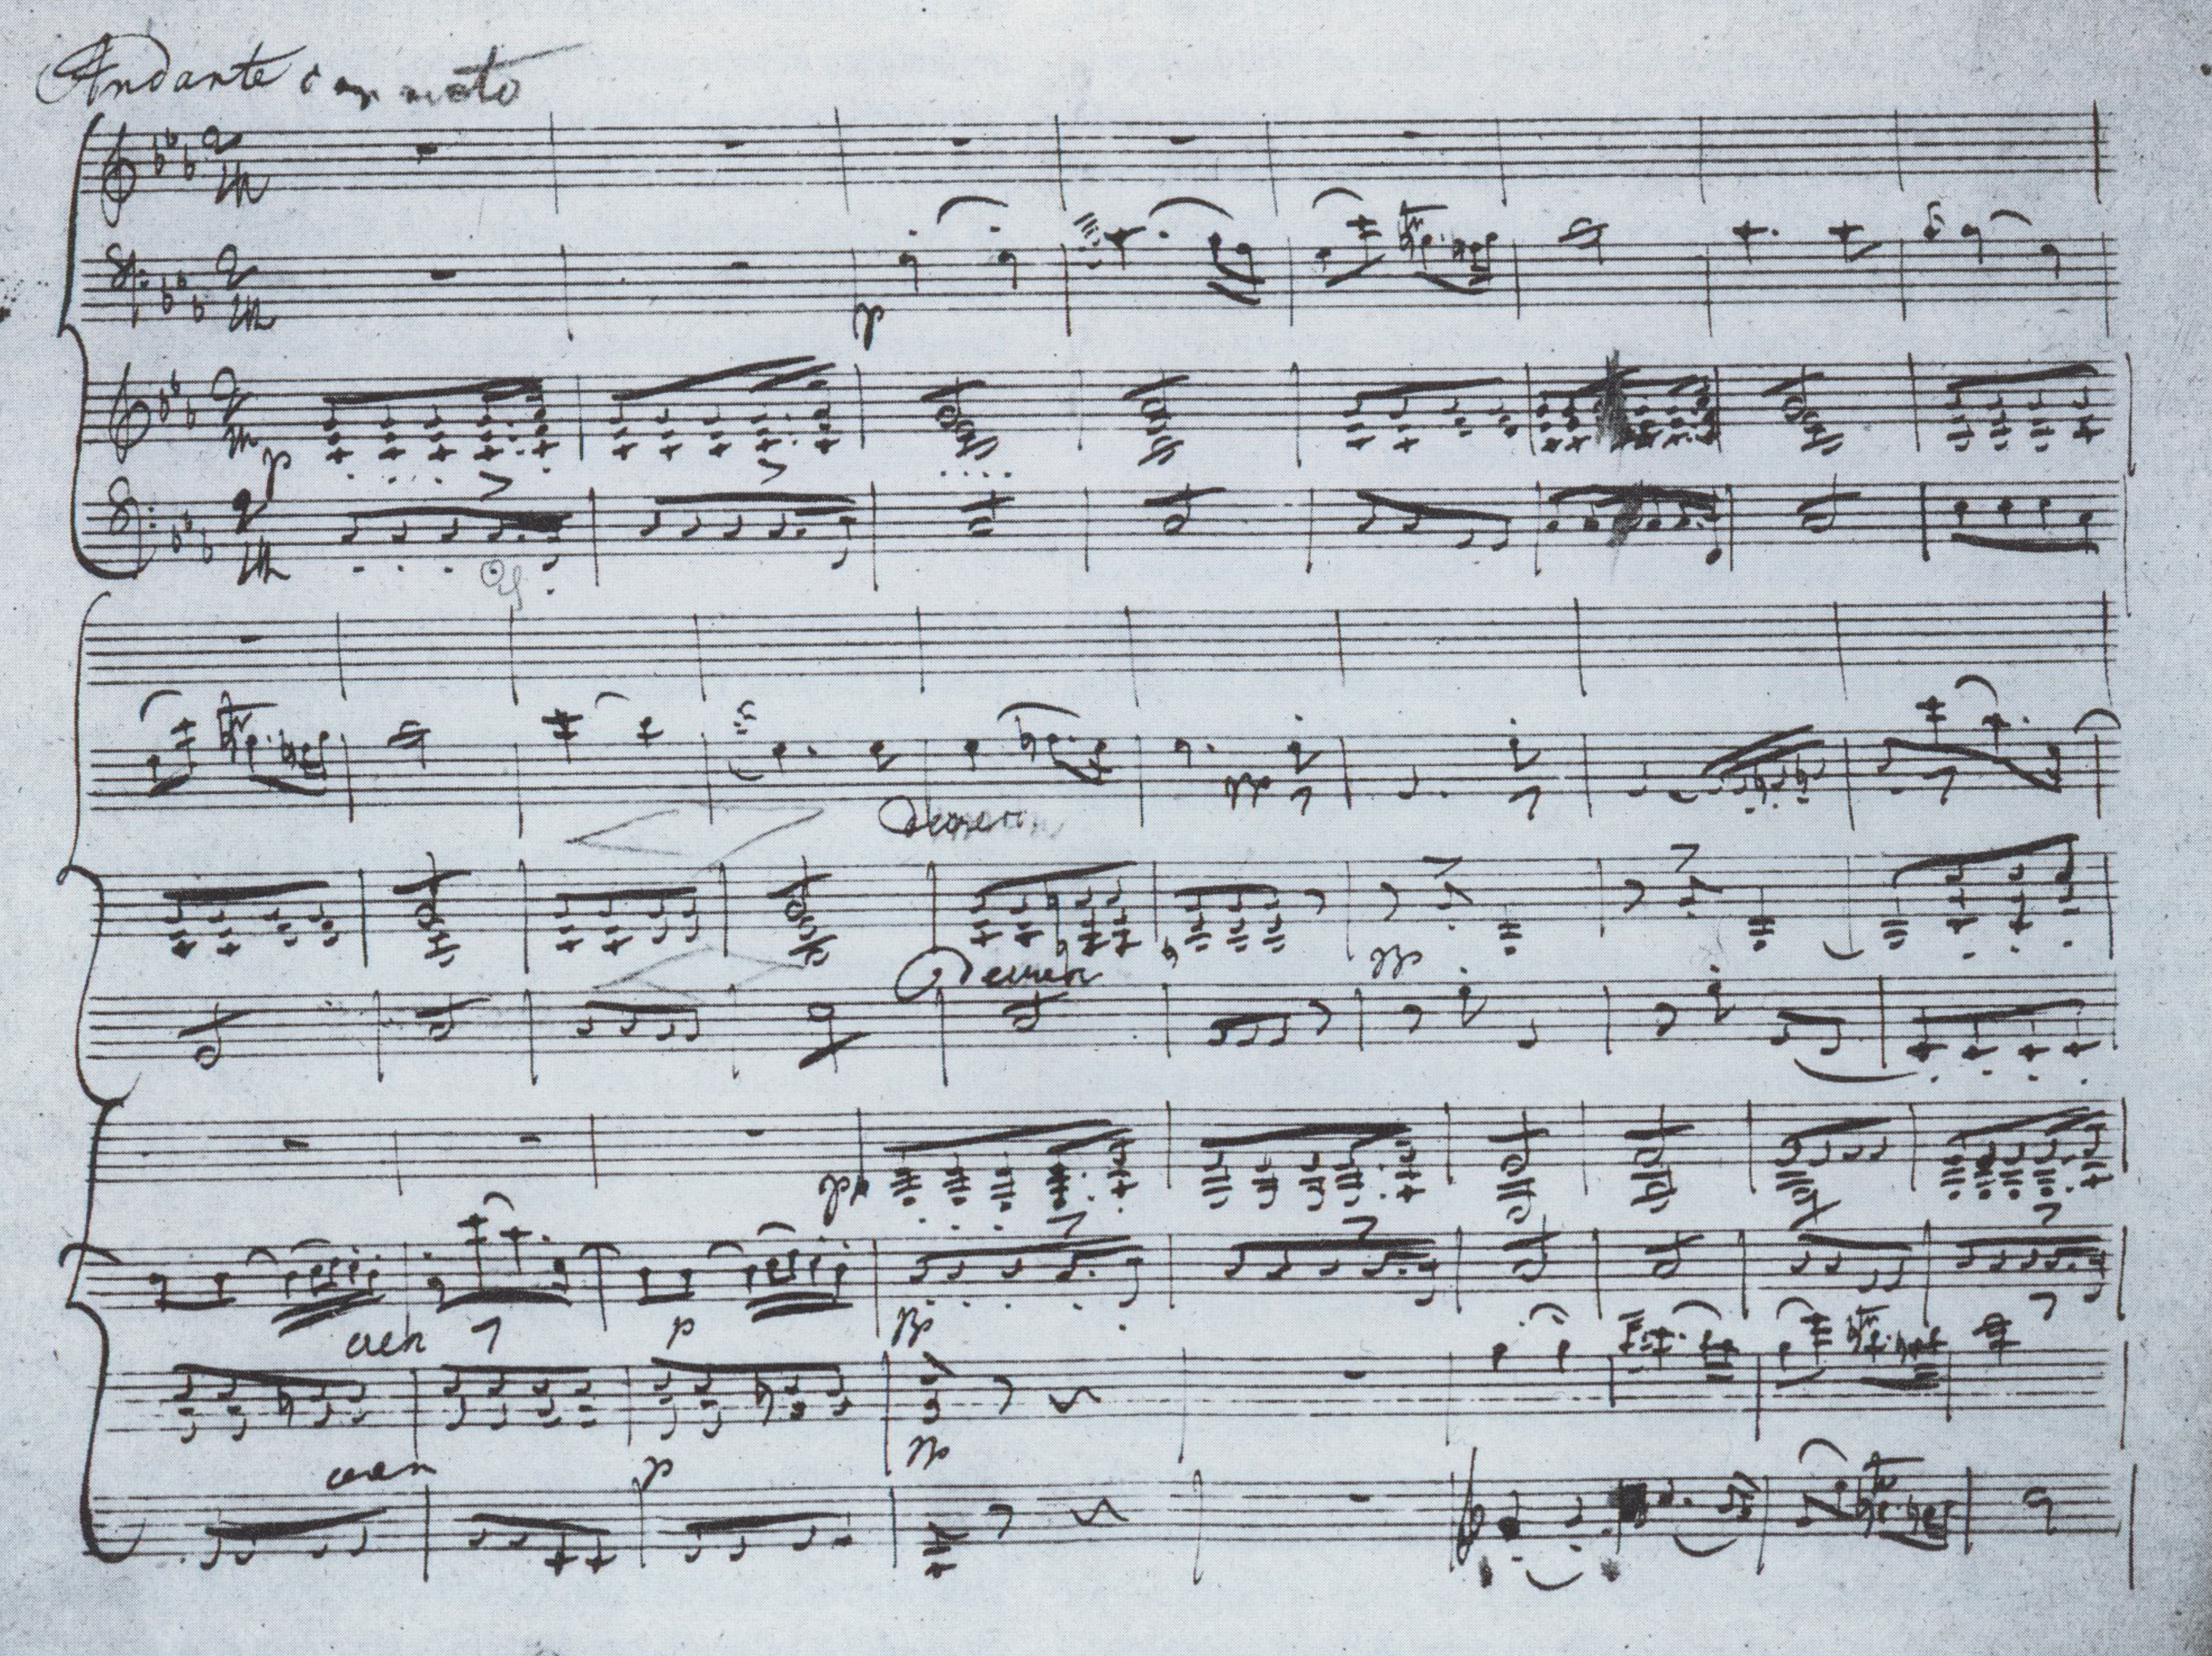 ピアノ三重奏曲第2番 (シューベルト) - Wikipedia